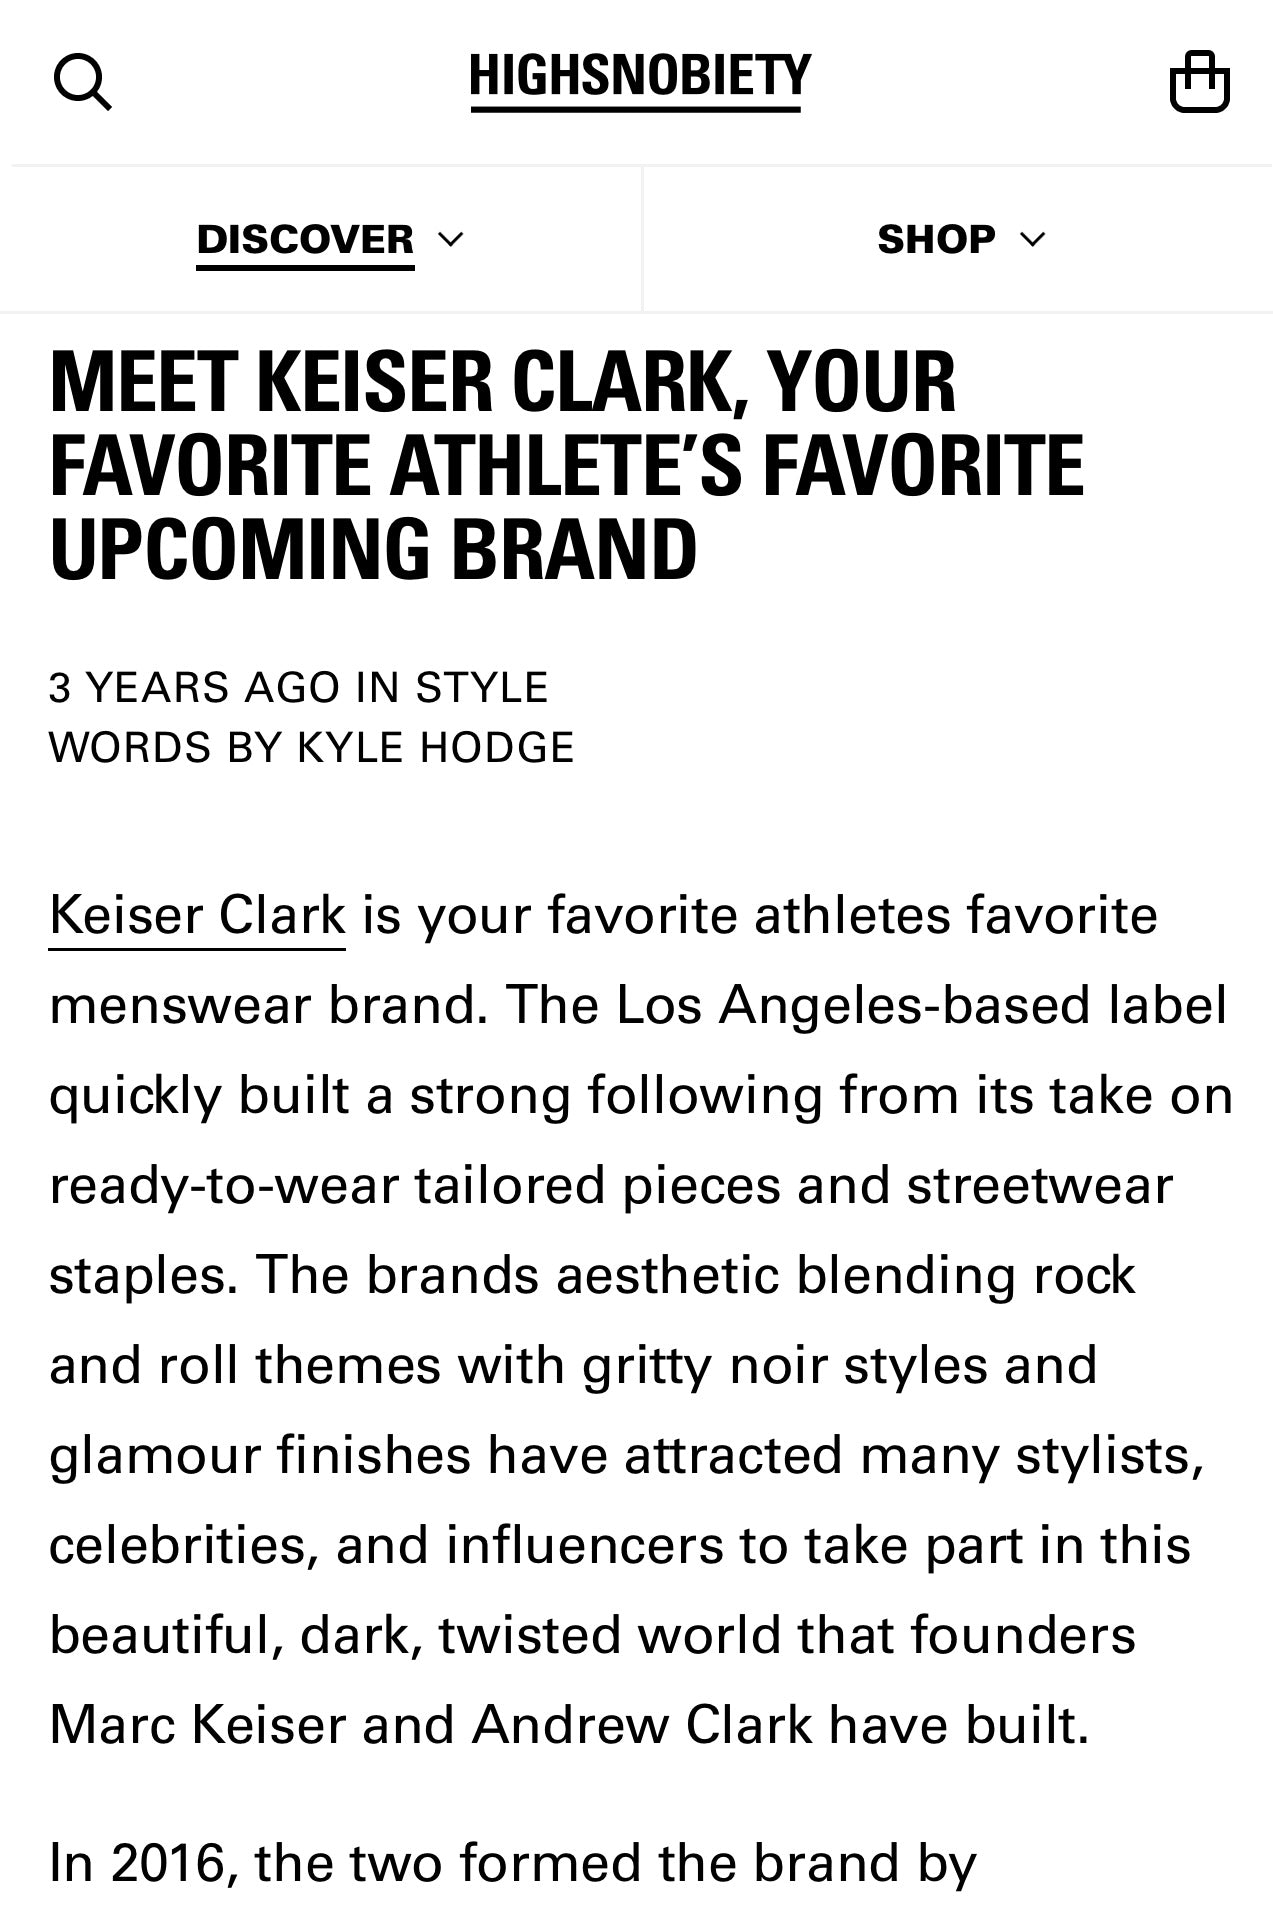 Keiser Clark featured in Highsnobiety